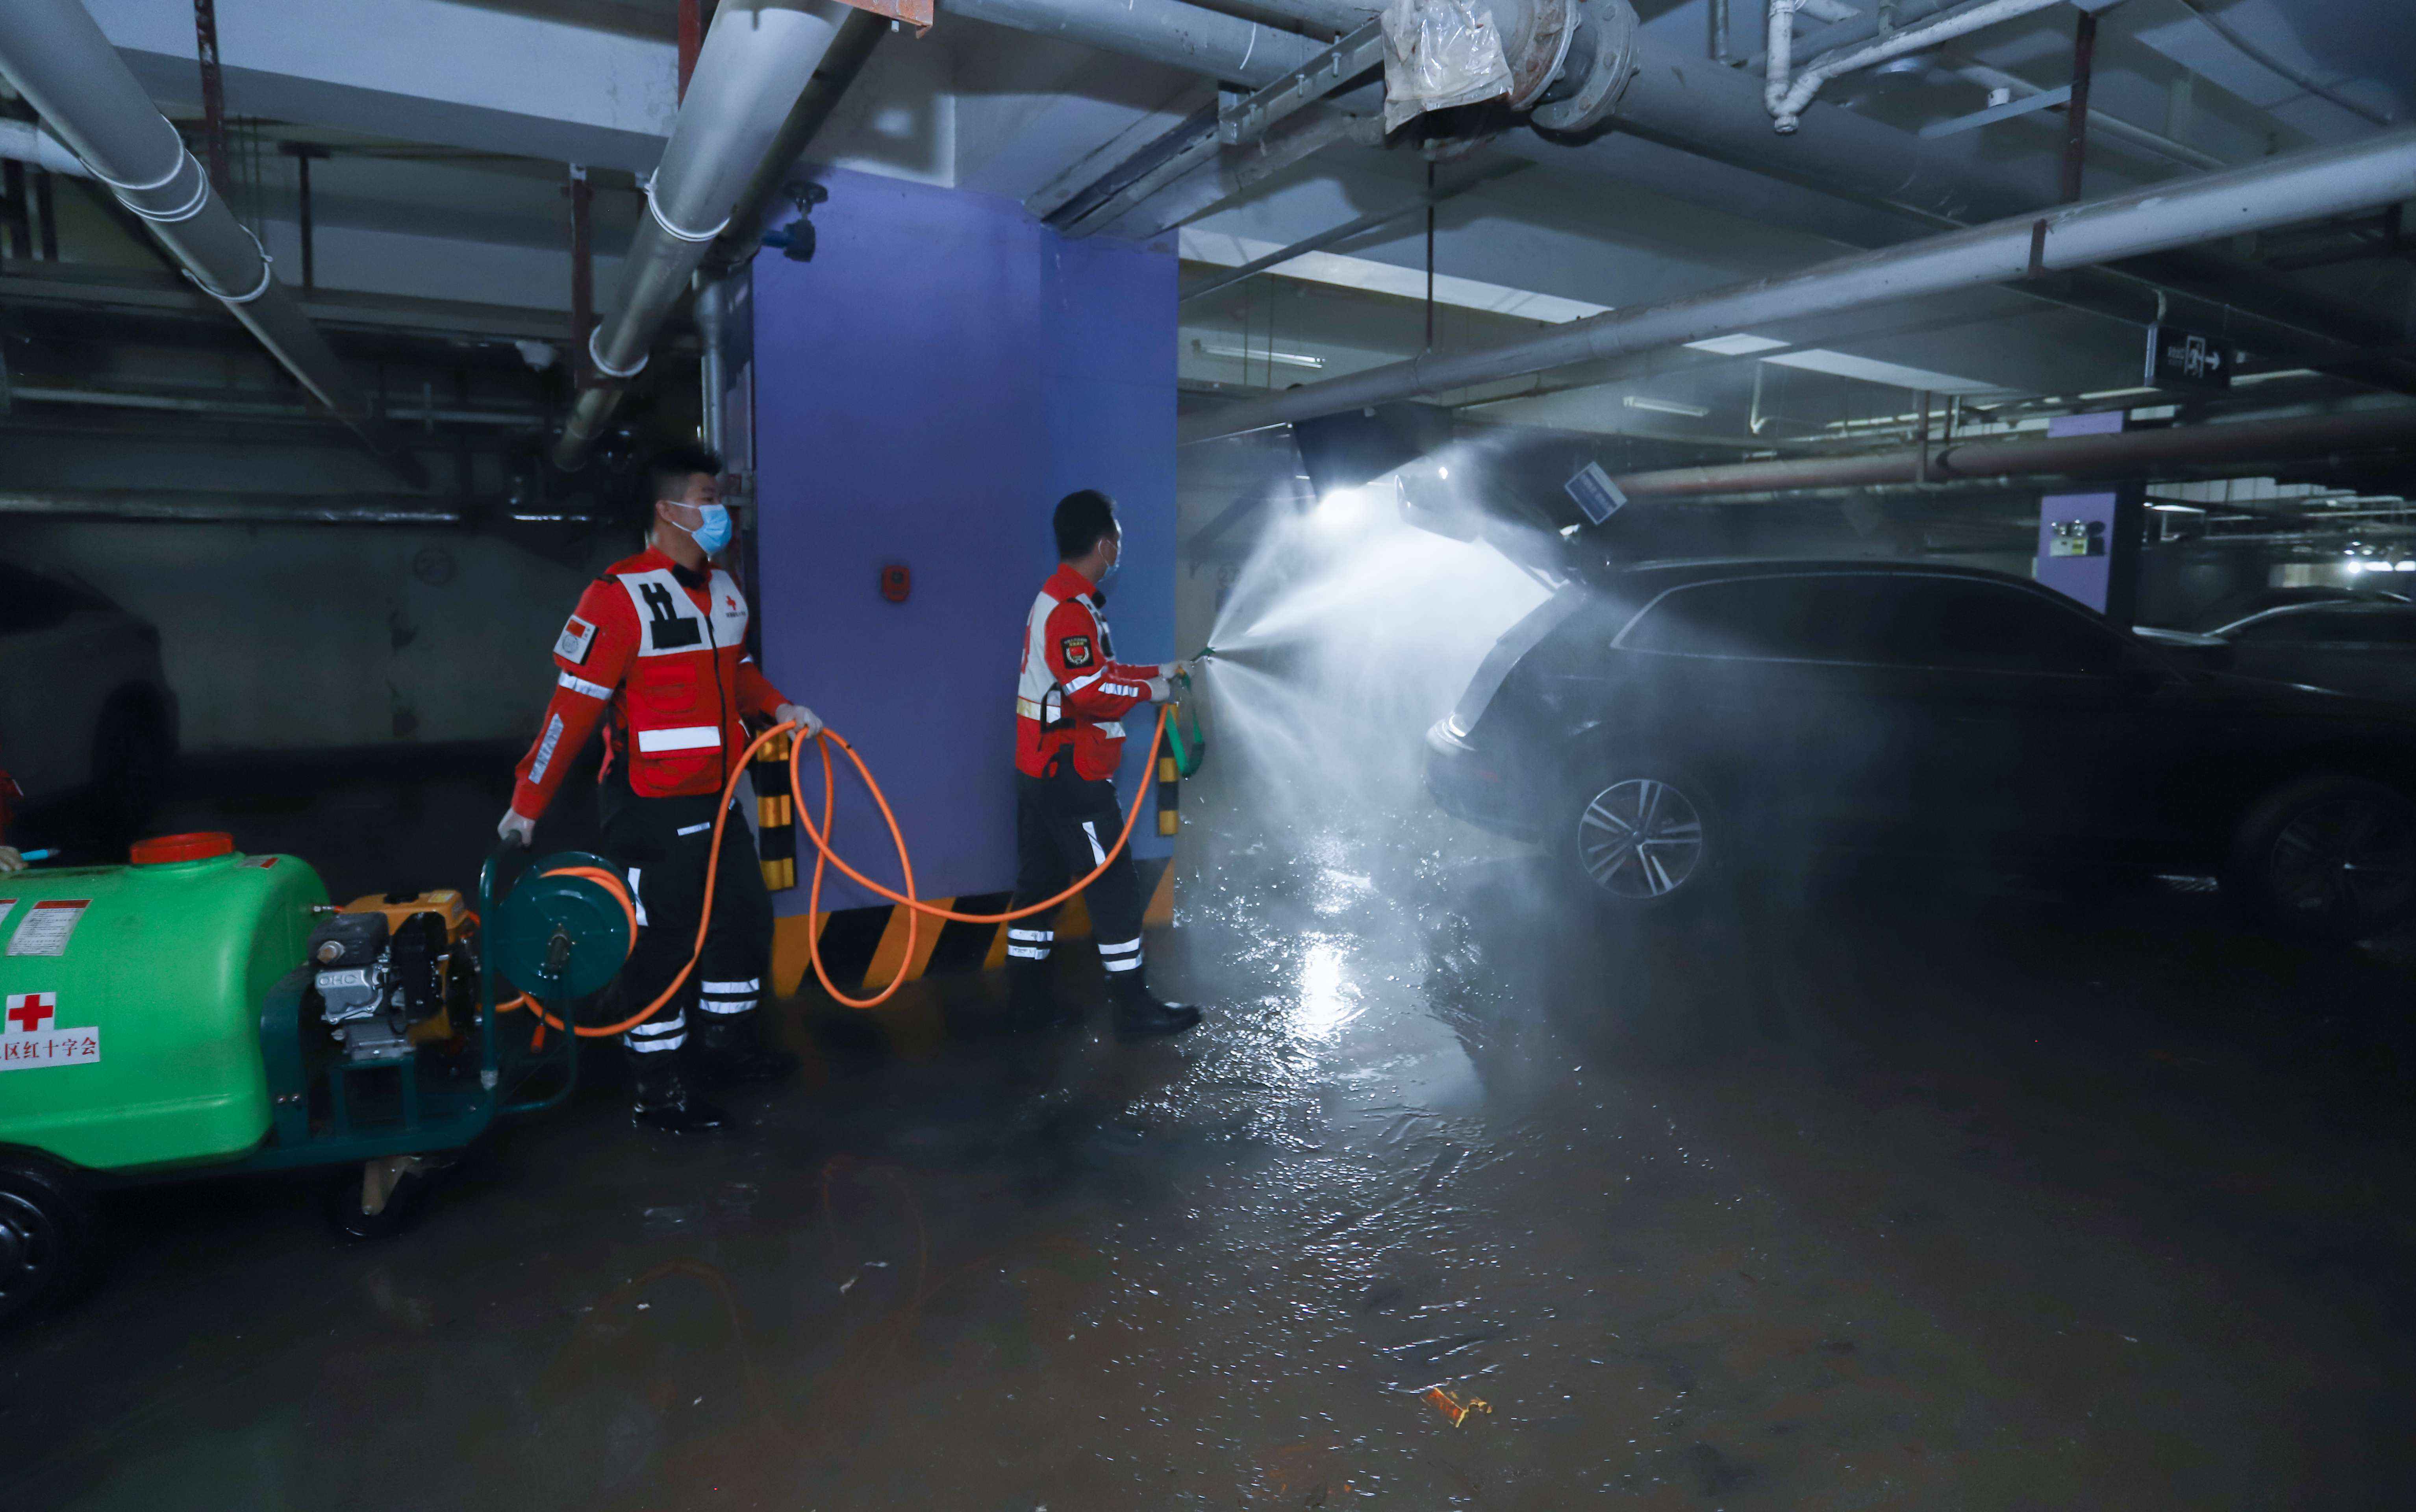 郑州市金水区红十字风马旗救援队在地下车库进行消杀处理。谭纪刚摄 中国红十字会供图